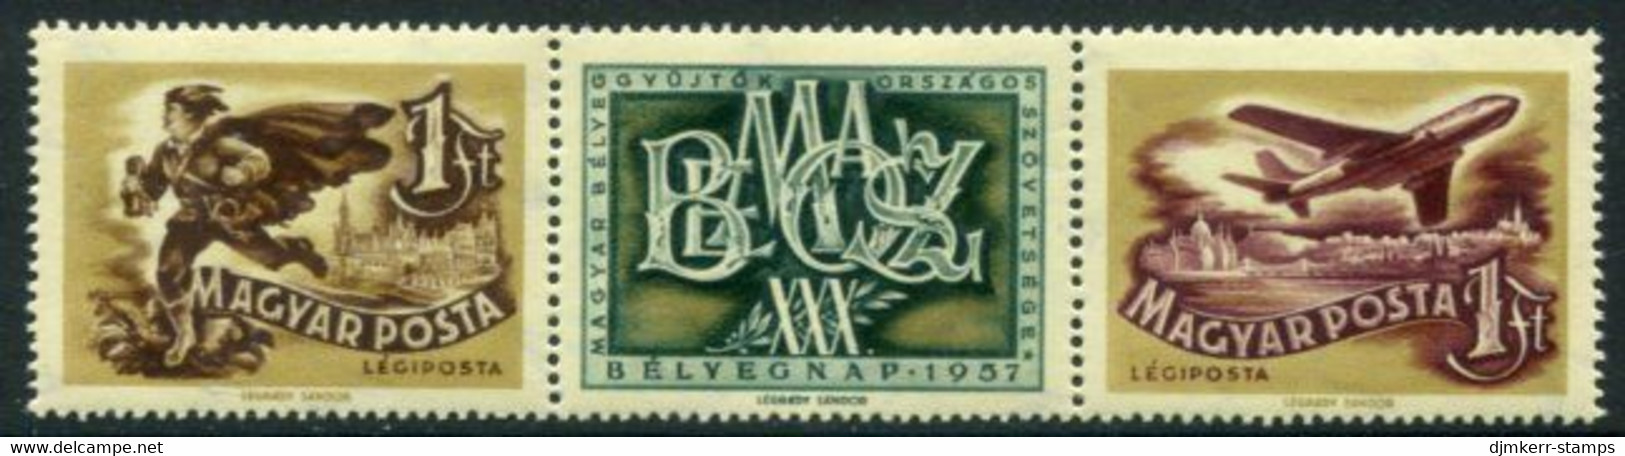 HUNGARY 1957 Stamp Day MNH / **.  Michel 1501-02 - Ungebraucht